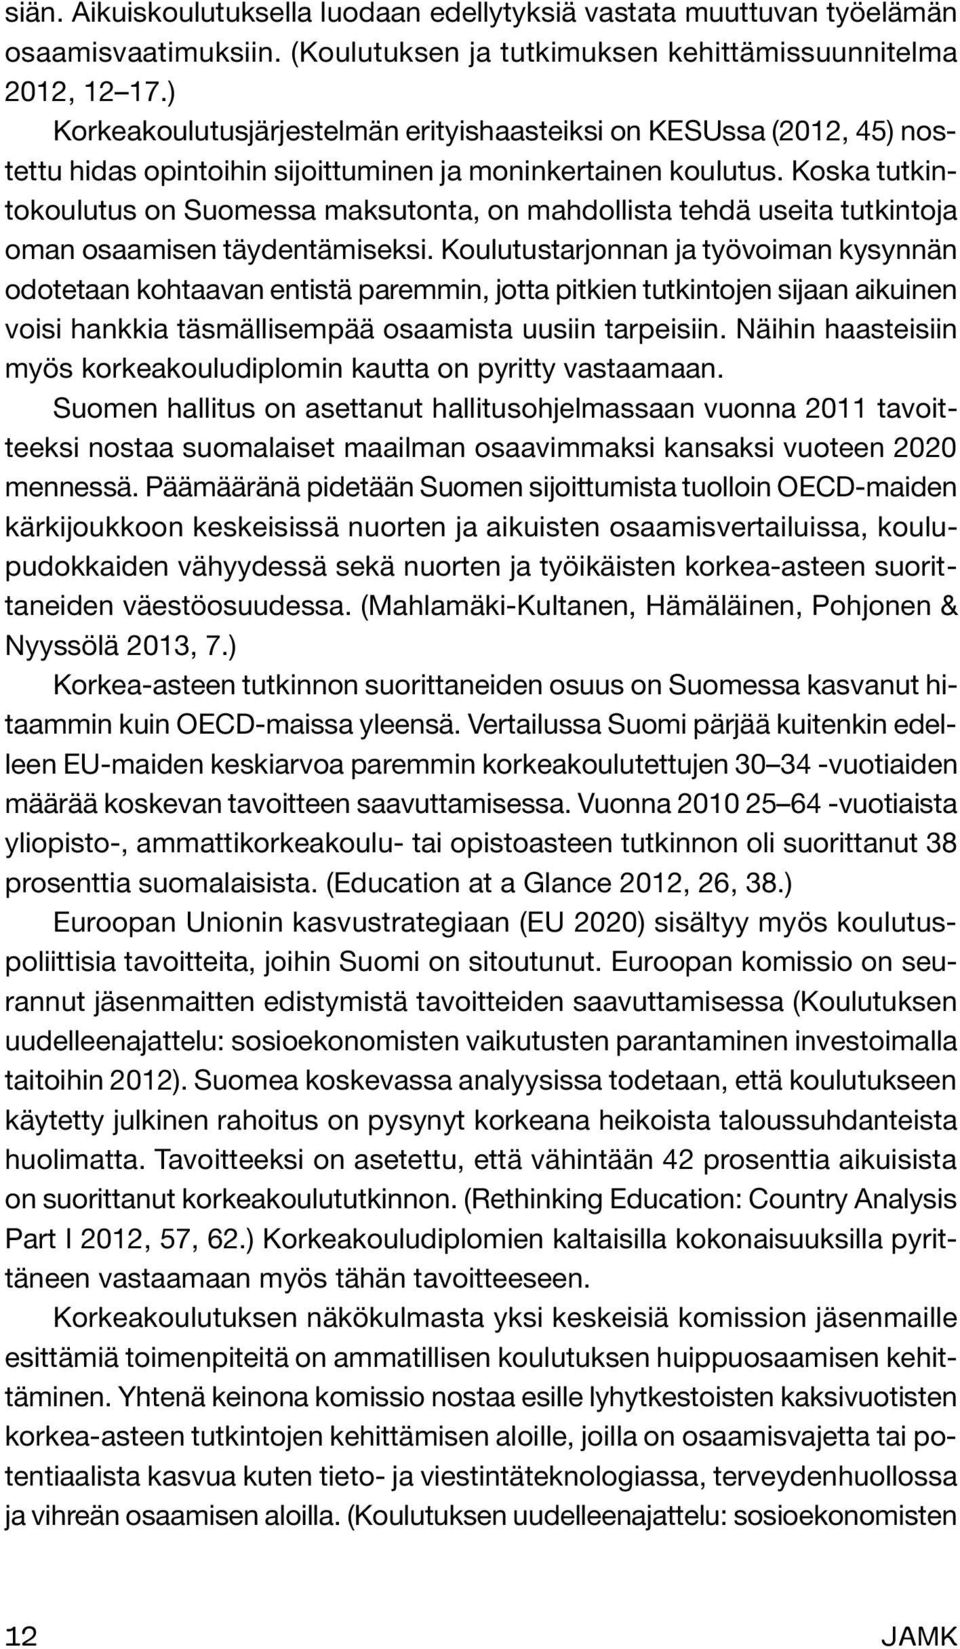 Koska tutkintokoulutus on Suomessa maksutonta, on mahdollista tehdä useita tutkintoja oman osaamisen täydentämiseksi.